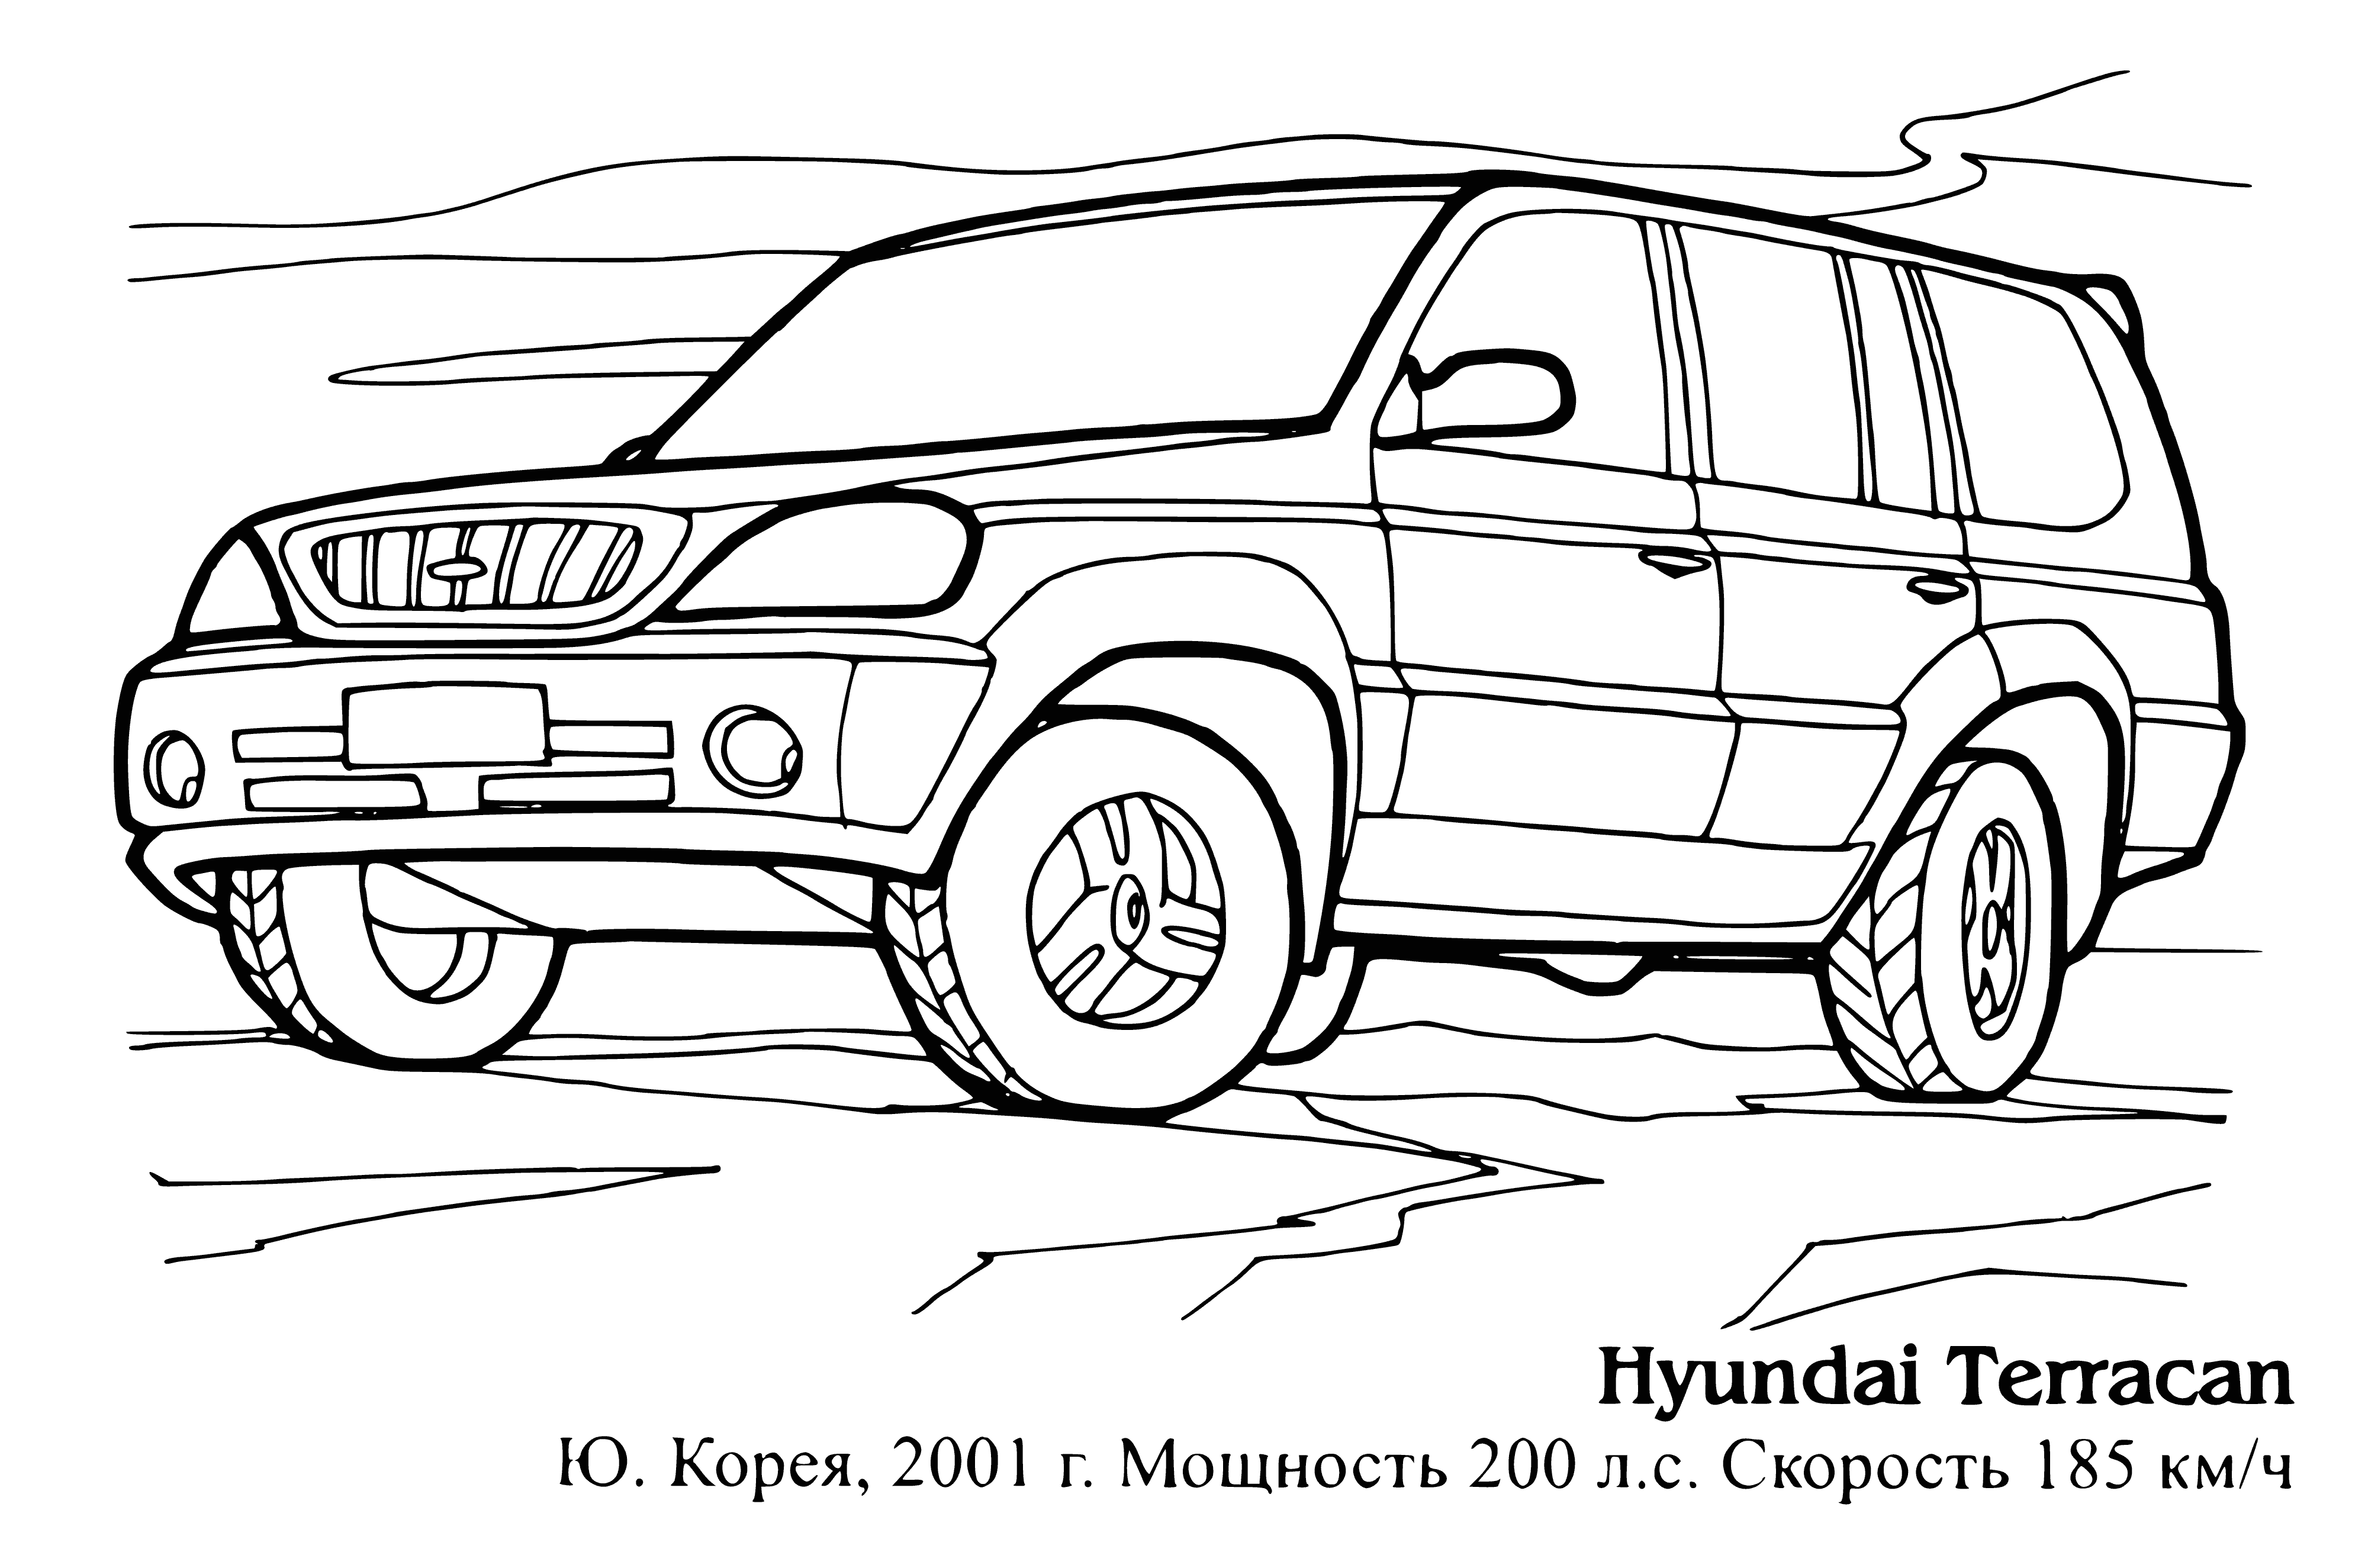 Hyundai Terracan boyama sayfası